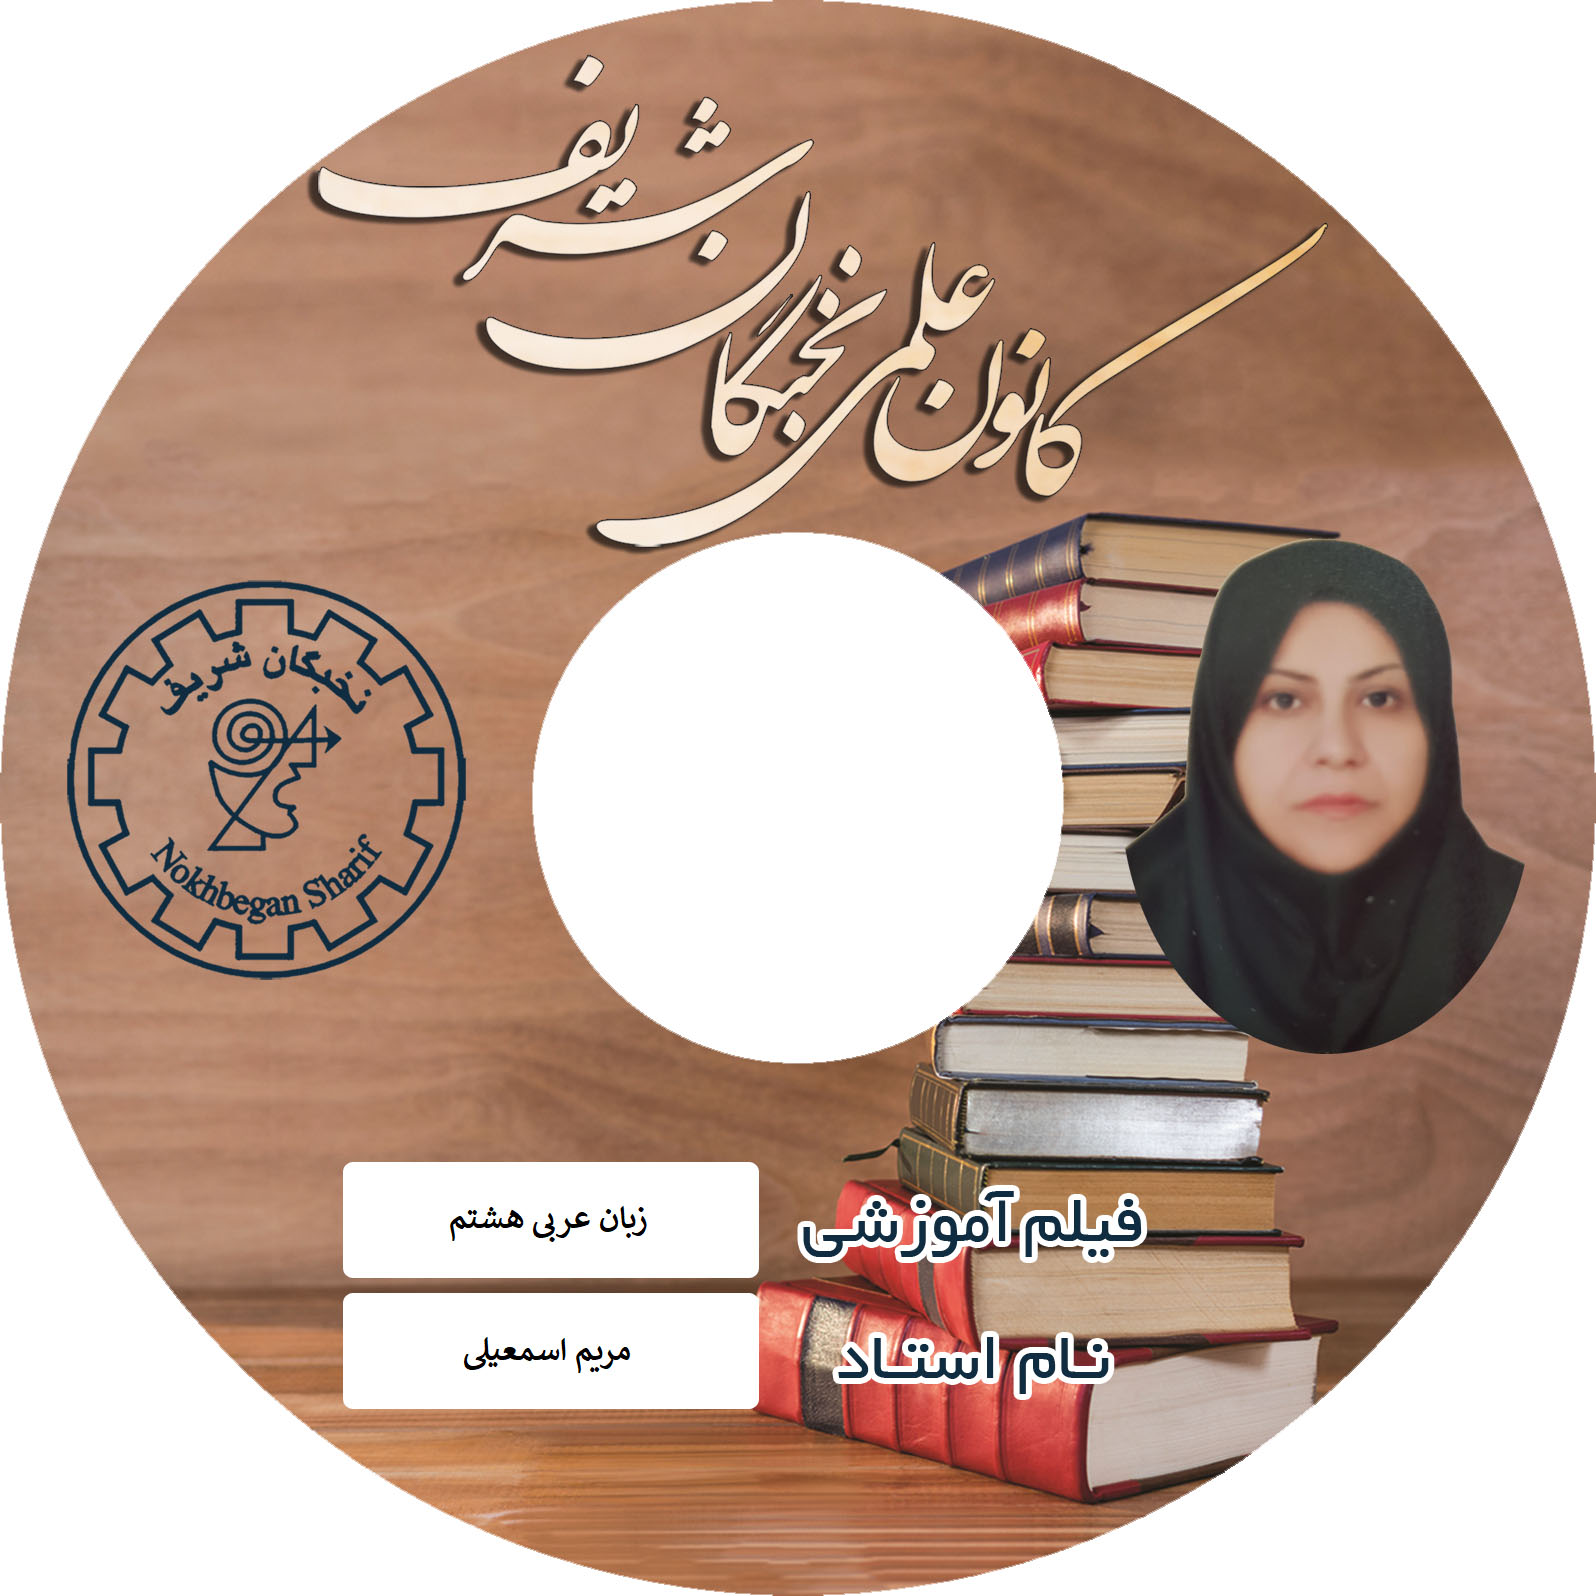 آموزش تصویری زبان عربی هشتم نشر نخبگان شریف